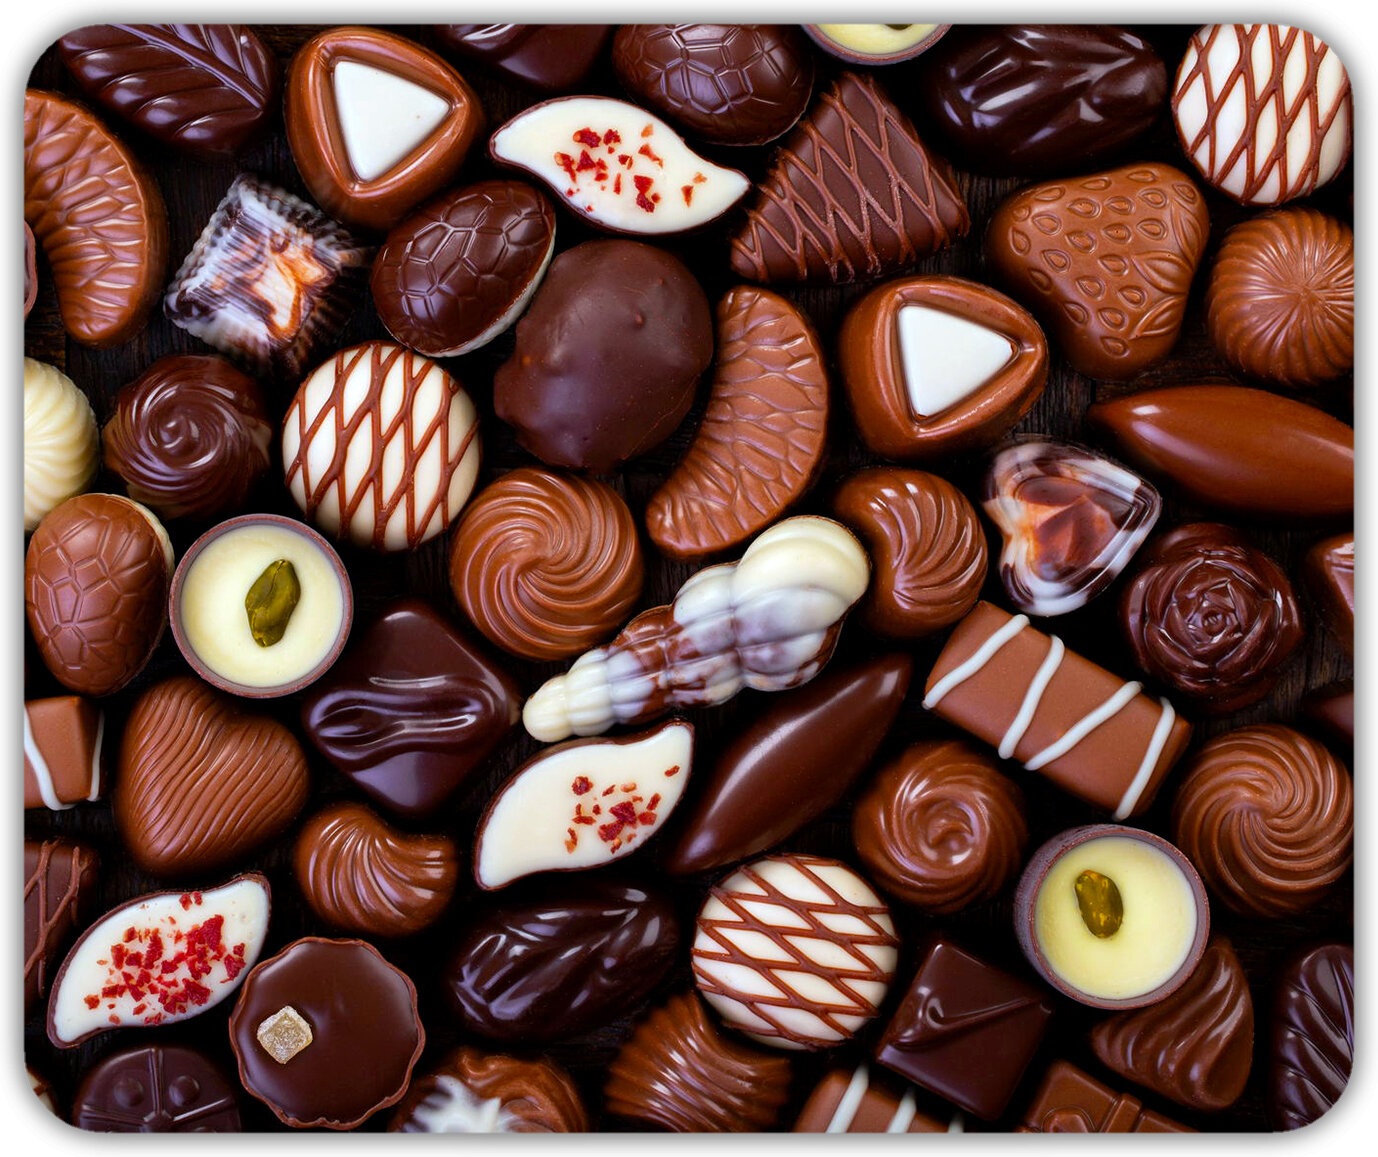 Коврик для мыши "Шоколадные конфеты" (24 x 20 см x 3 мм)